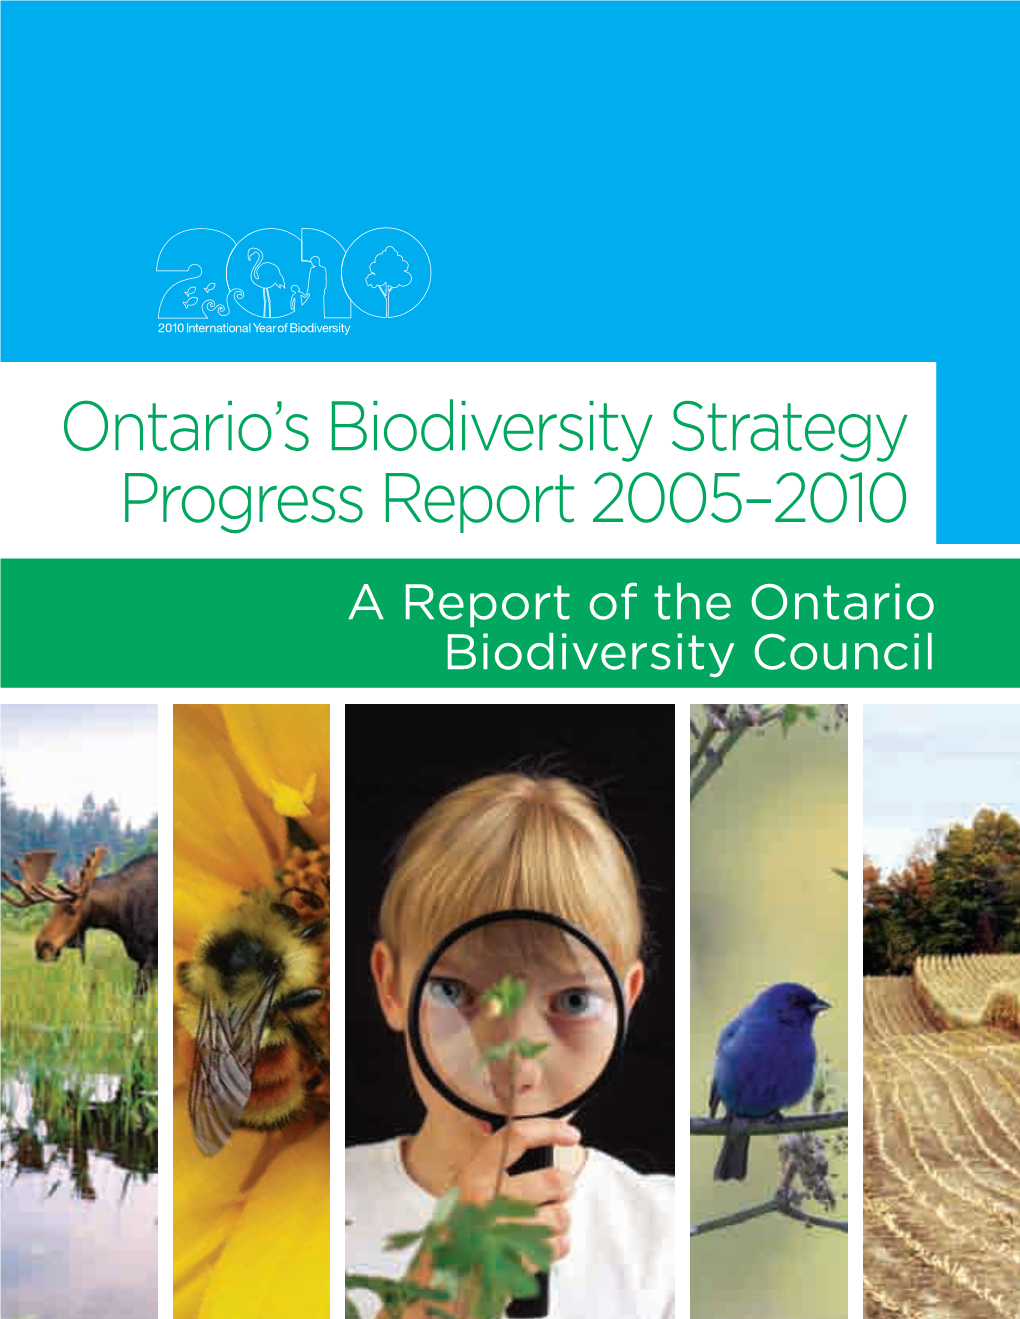 Ontario's Biodiversity Strategy Progress Report 2005-2010